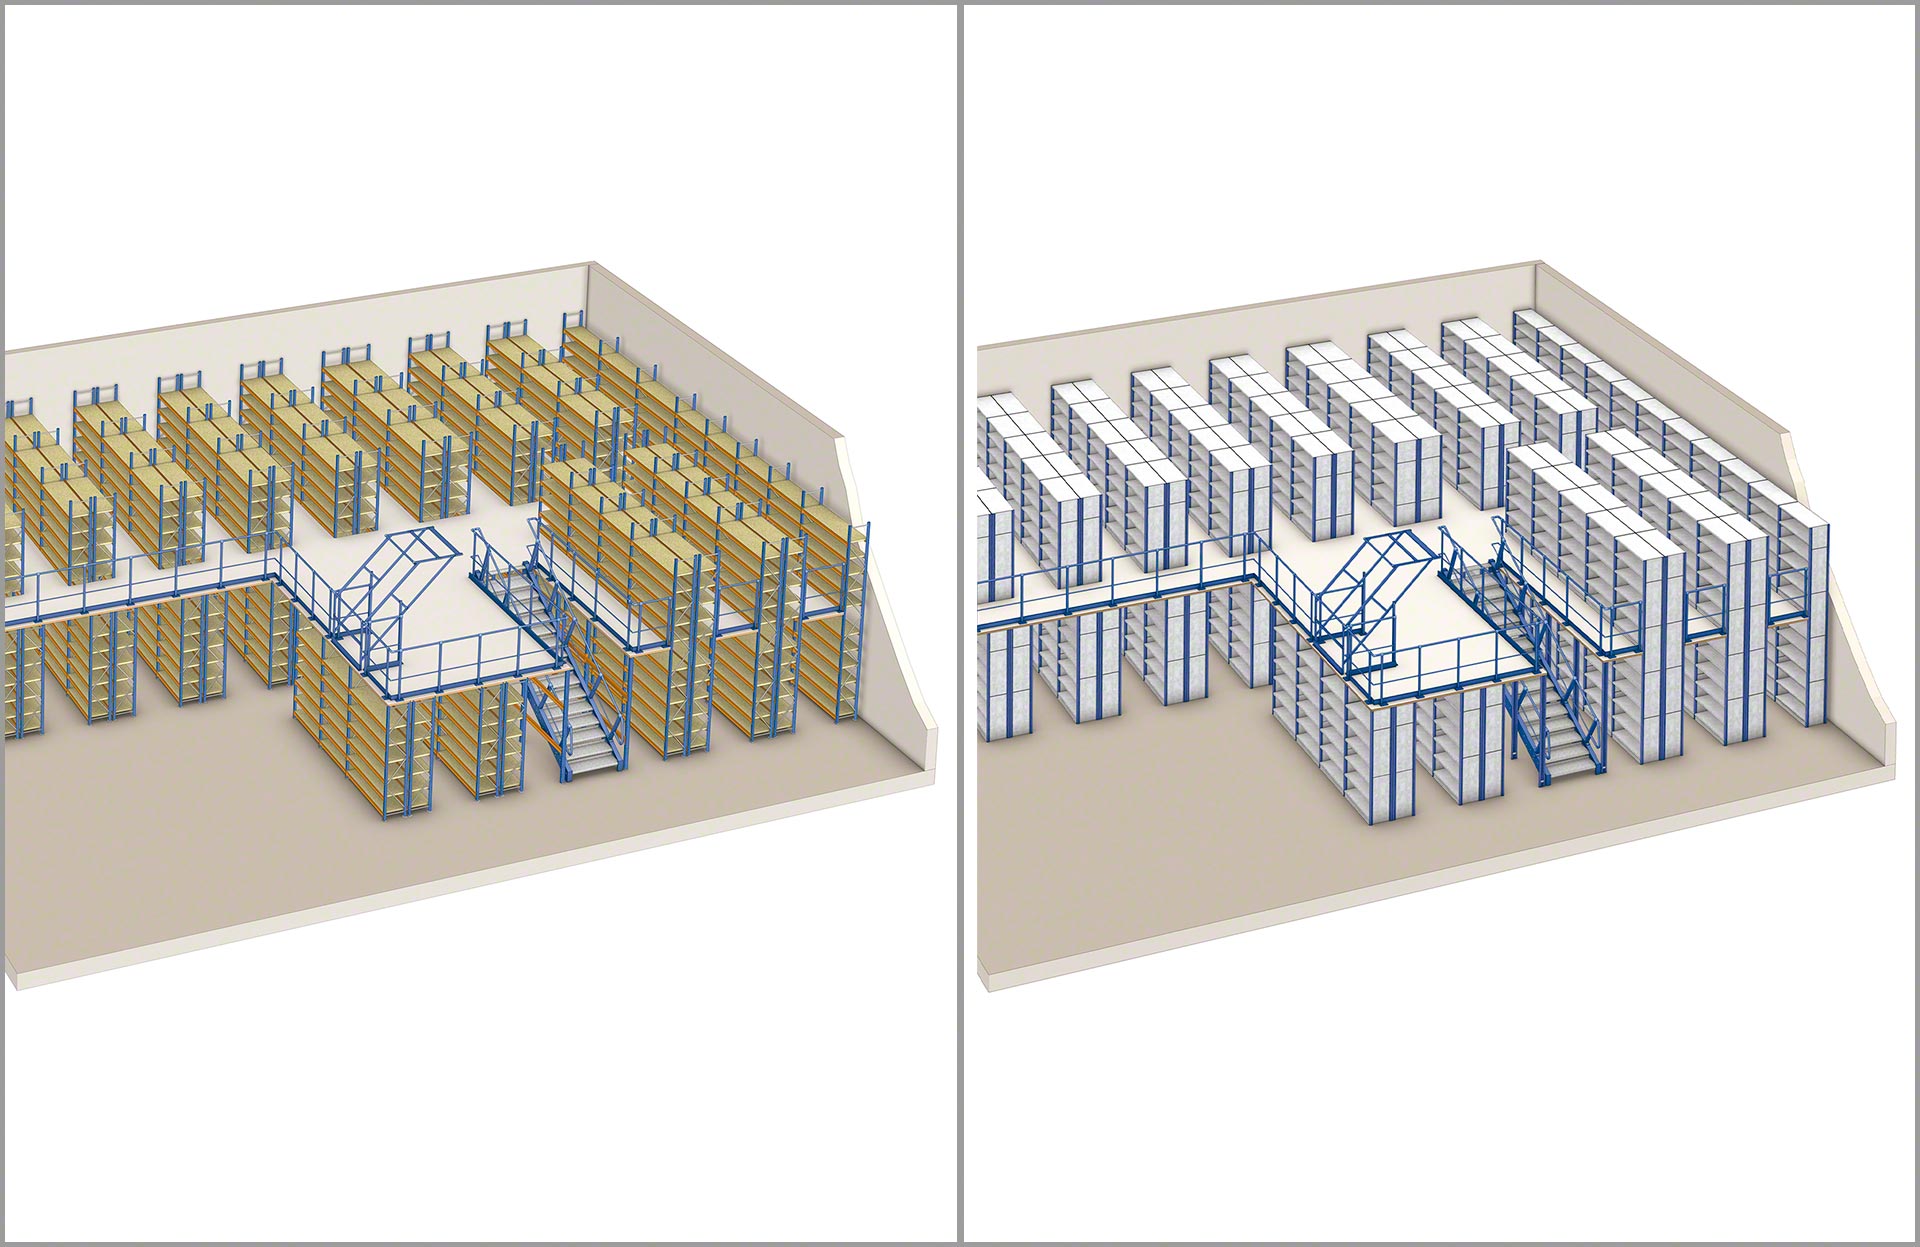 Los pasillos elevados se pueden configurar con distintos tipos de estanterías para picking de Mecalux